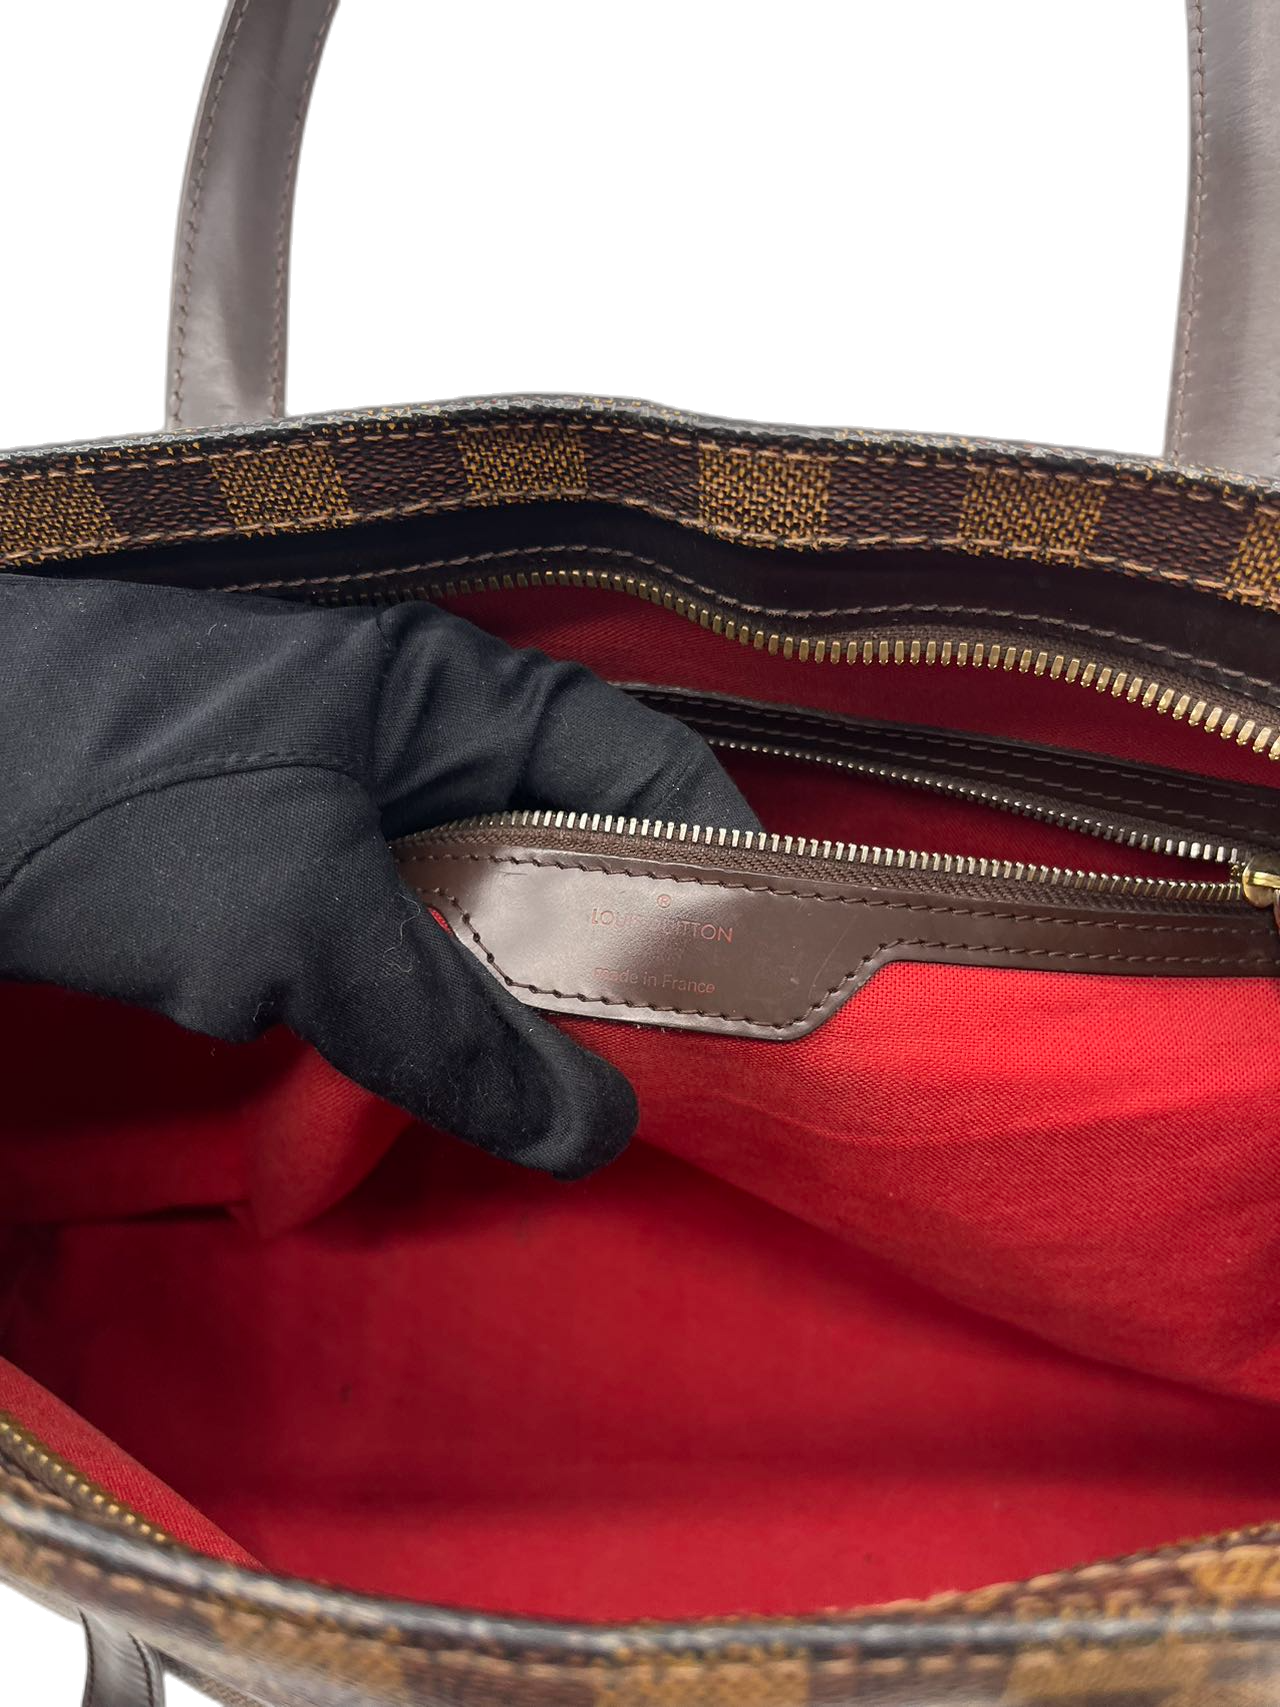 Preloved Louis Vuitton Damier Ebene Chelsea Totes Shoulder Bag